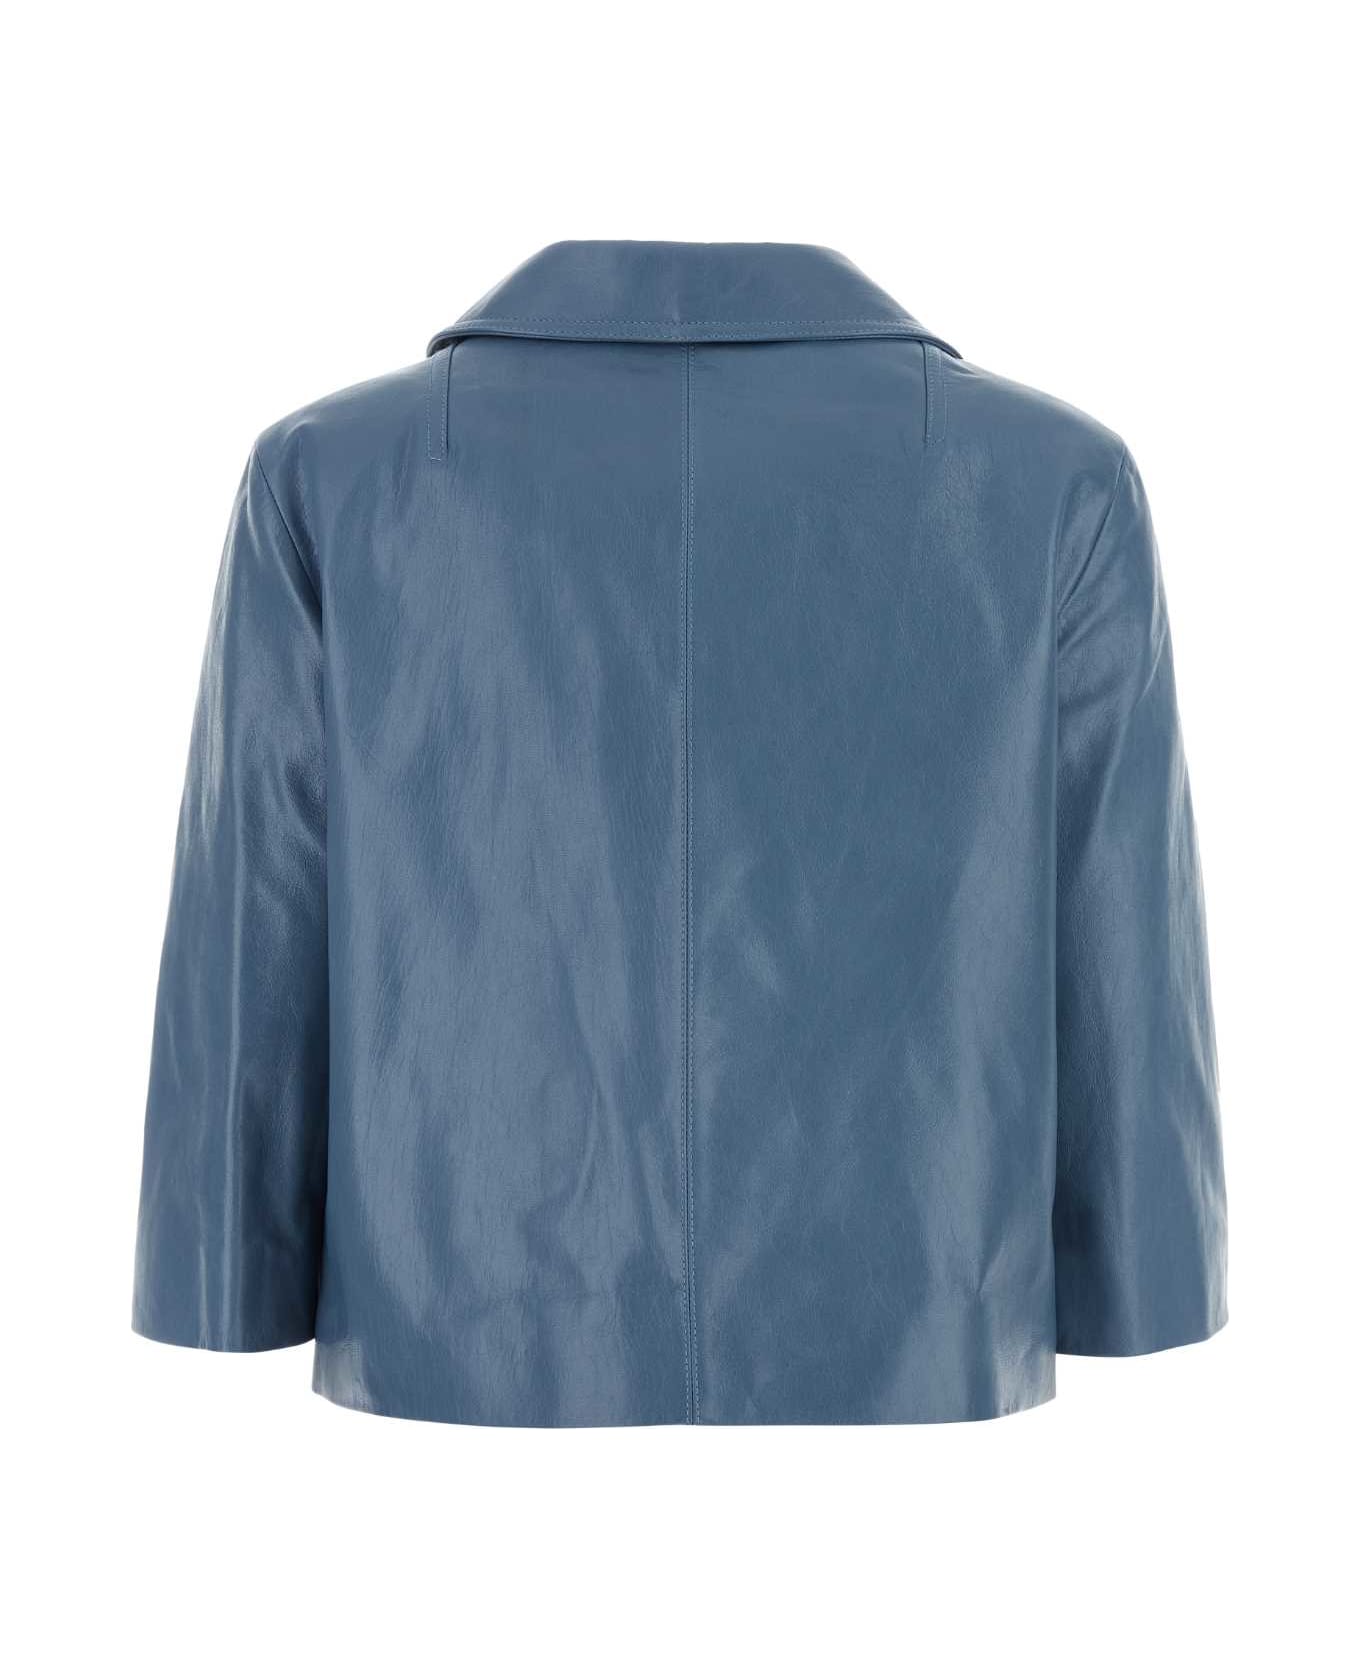 Marni Cerulean Blue Leather Blazer - 00B37